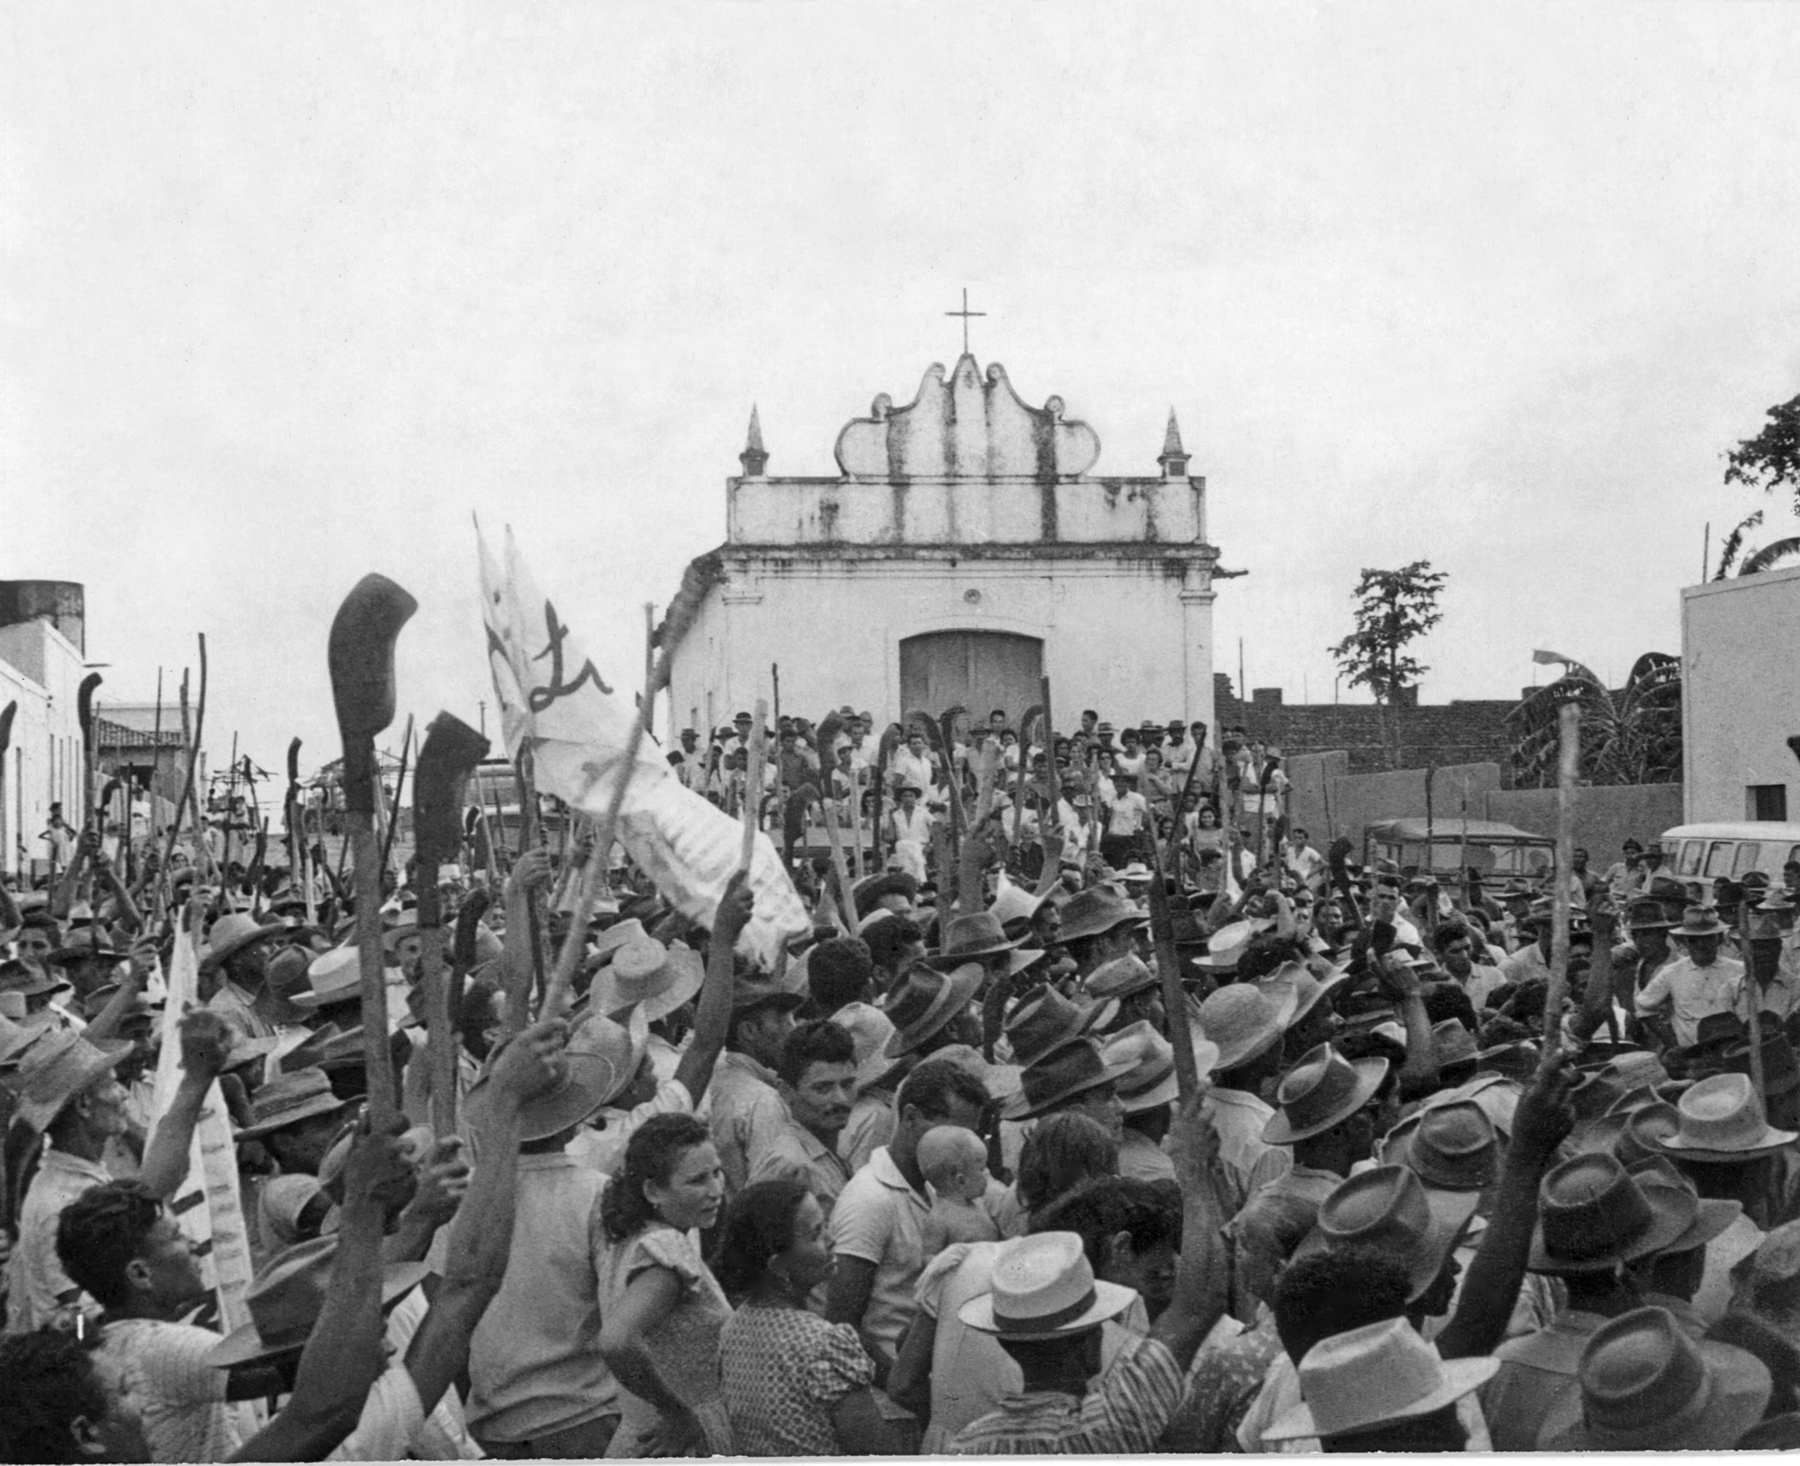 Fotografia em preto e branco. Homens e mulheres reunidos em um protesto em frente a uma pequena igreja. Estão erguendo ferramentas de trabalho no campo.